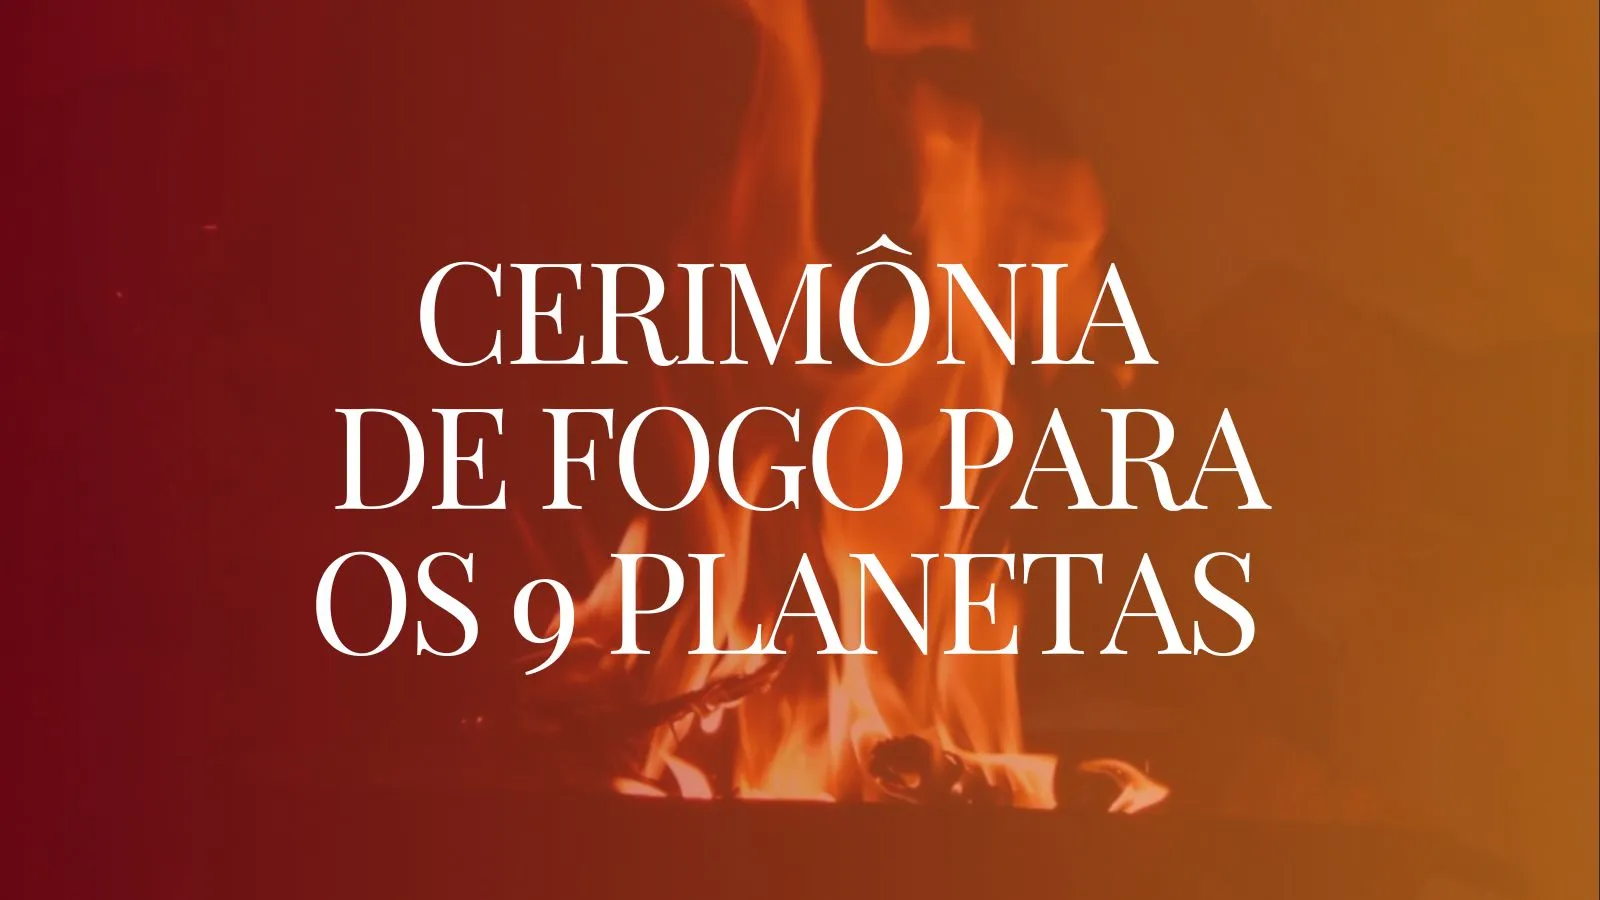 Homa: Cerimonia de fogo para os 9 planetas